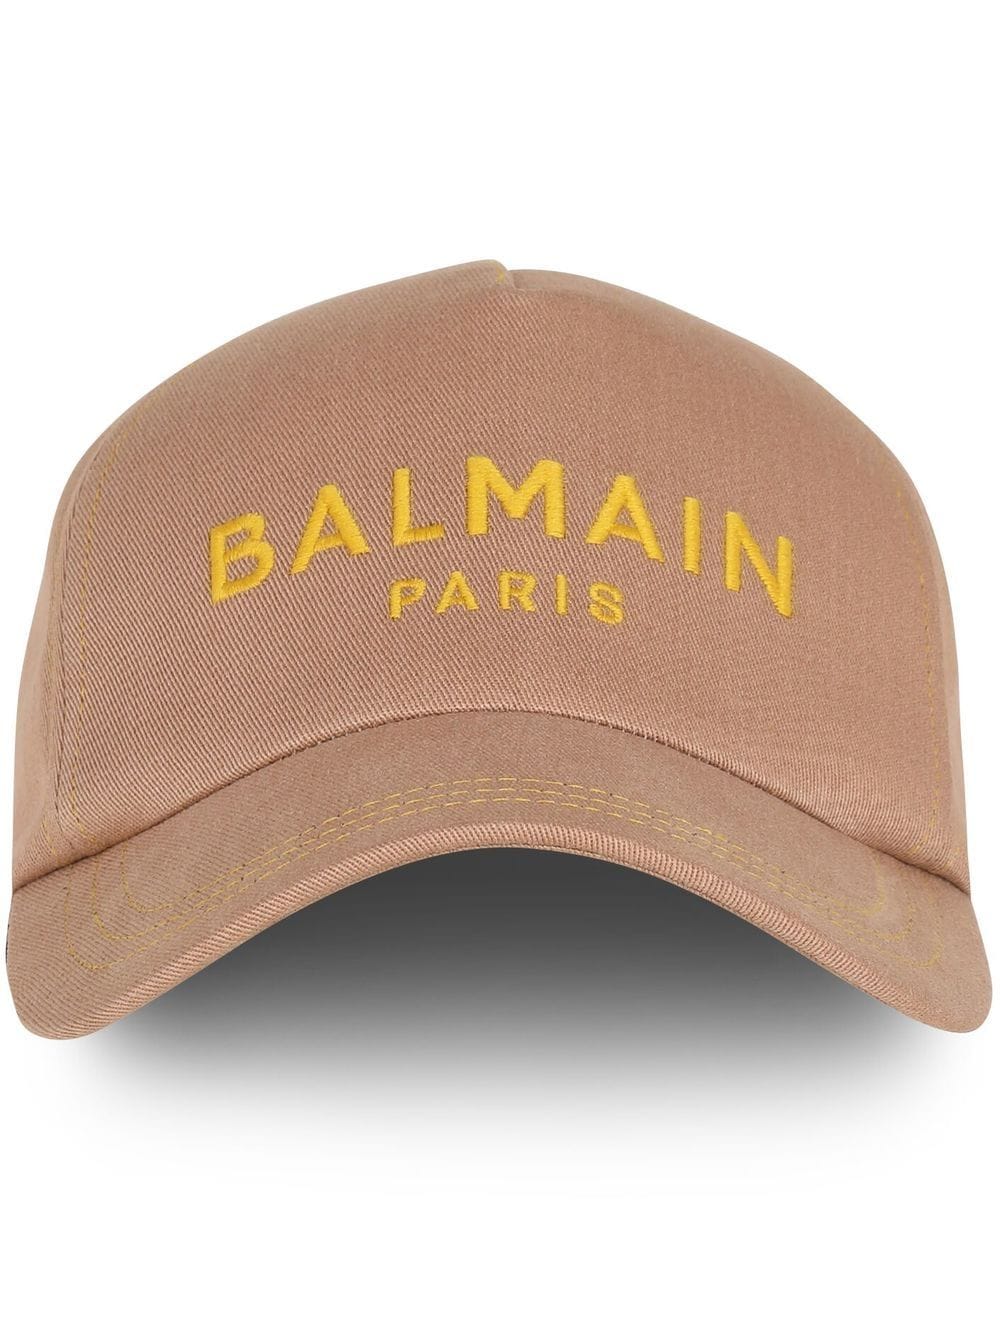 BALMAIN EMBROIDERED-LOGO BASEBALL CAP